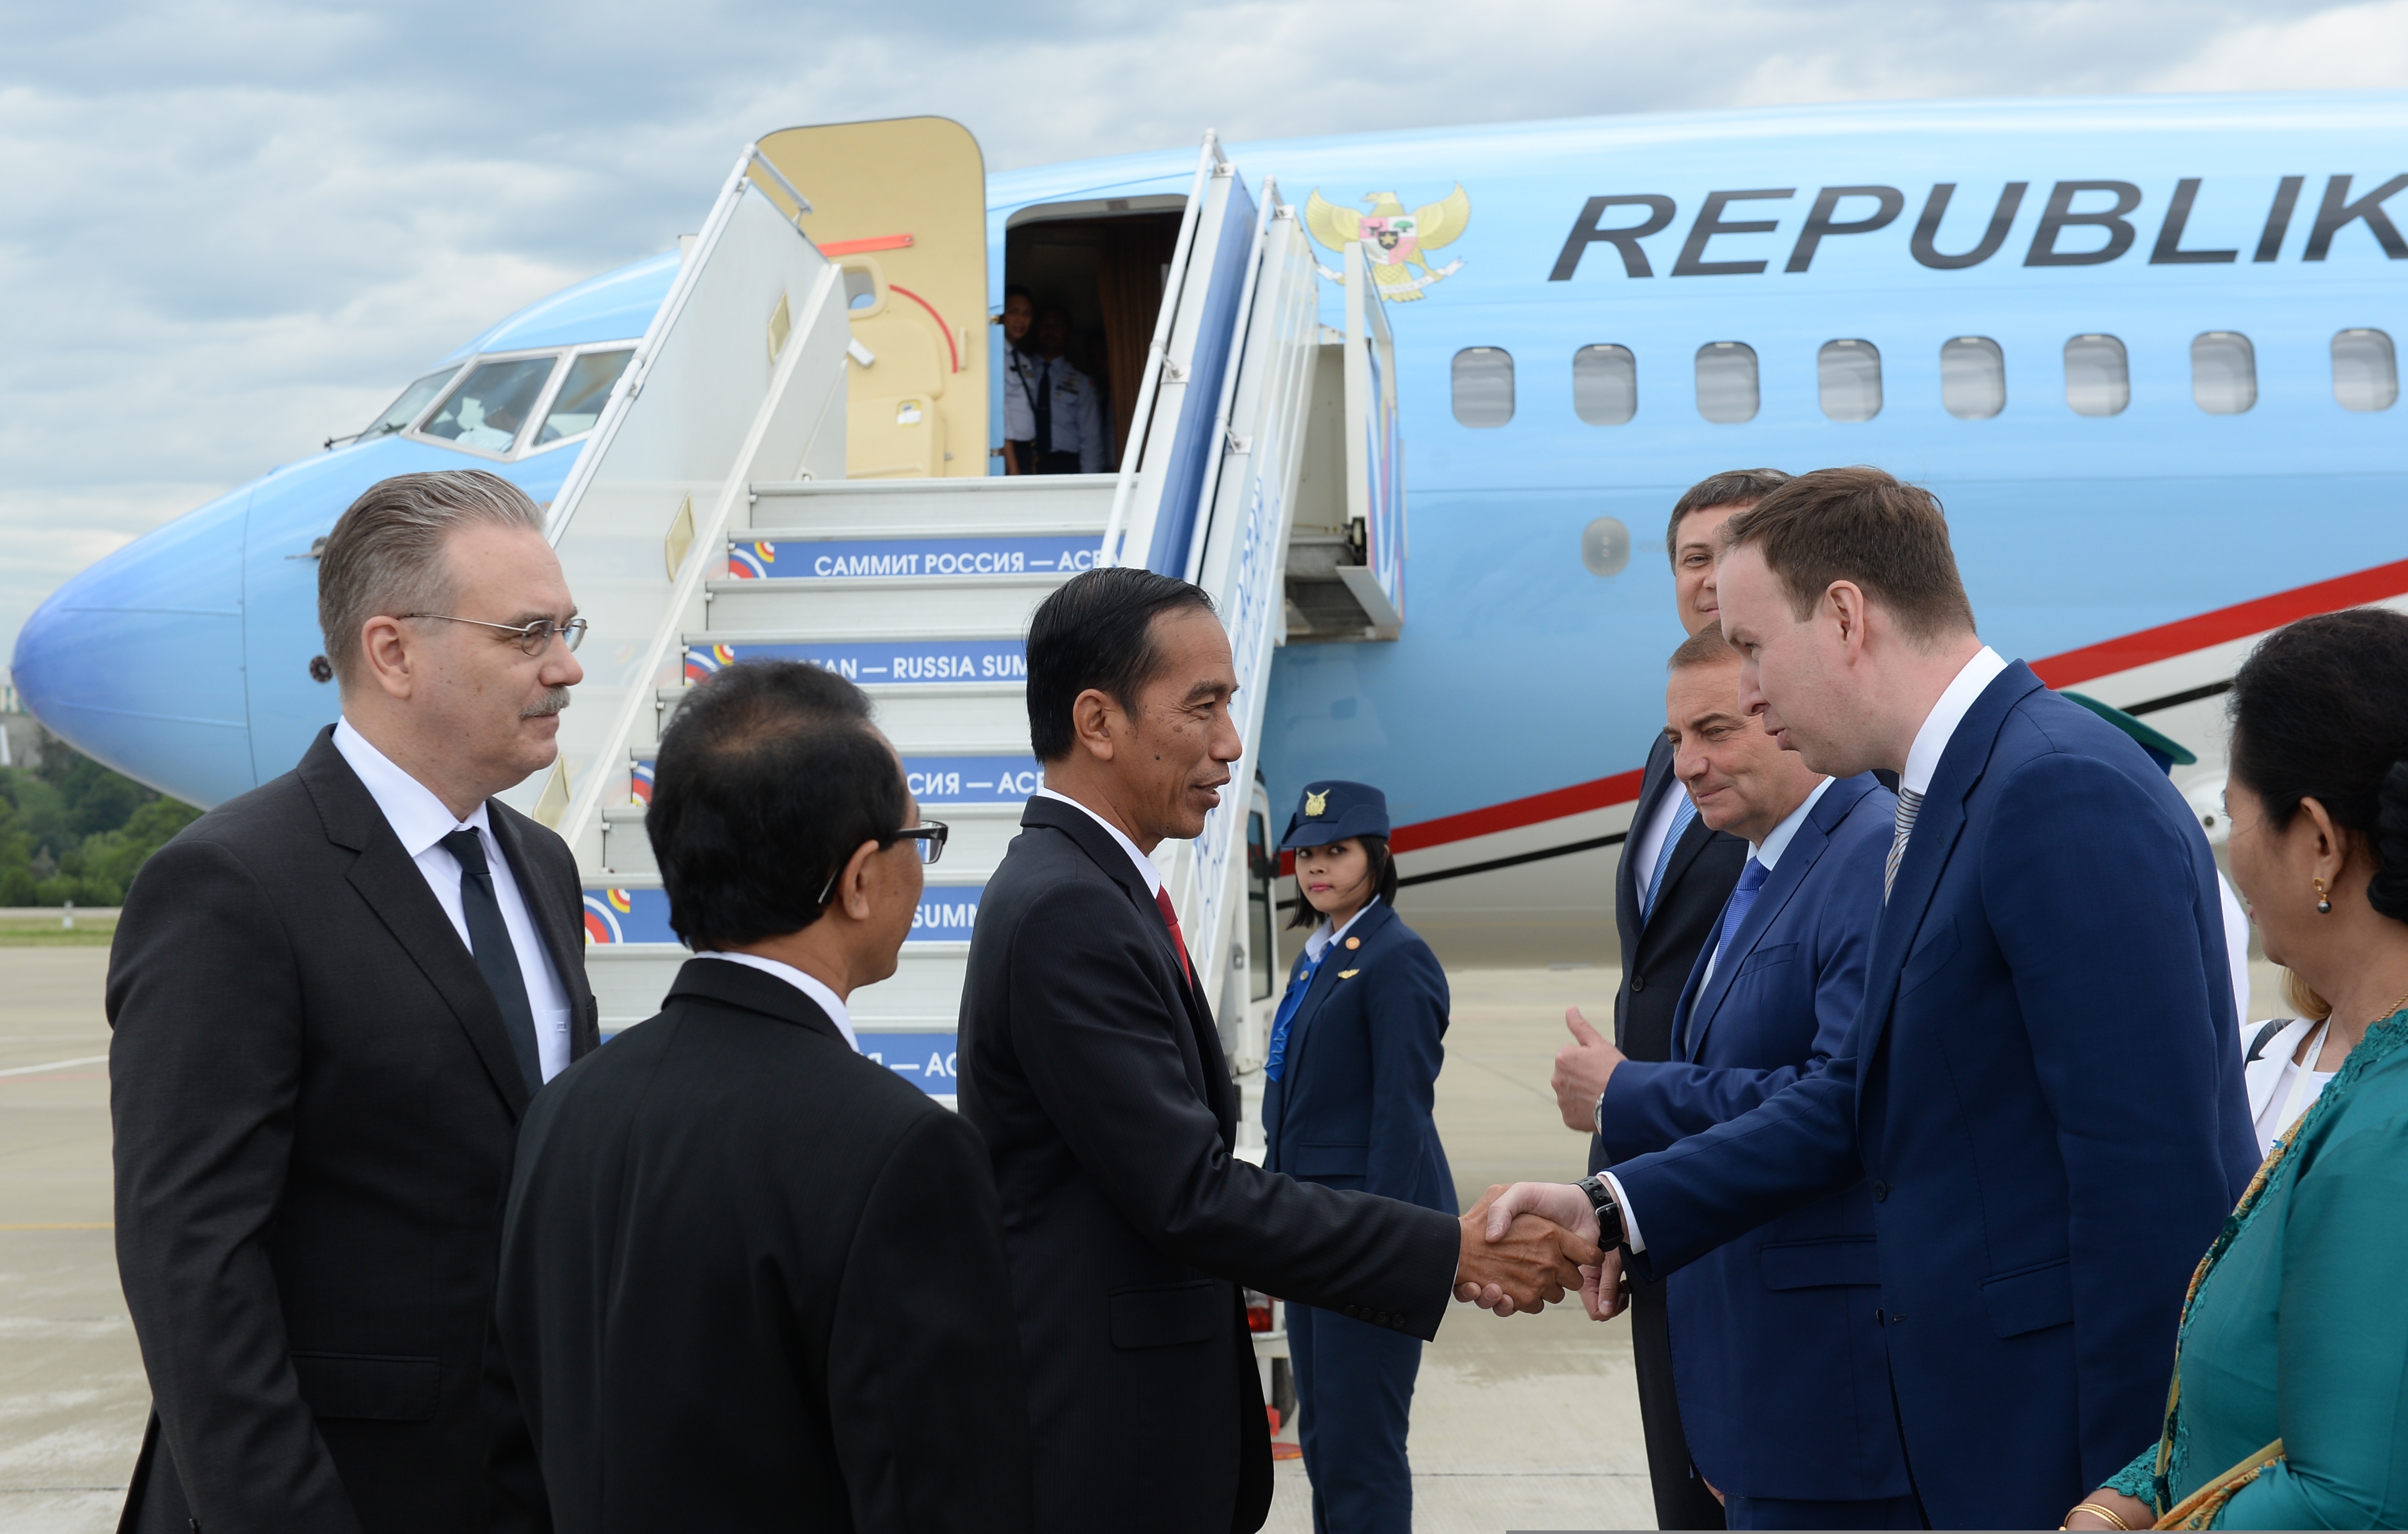 Presiden RI Joko Widodo beserta rombongan tiba di Sochi, Rusia, Rabu (18/5) pukul 14.35 waktu setempat atau pukul 18.35 WIB.